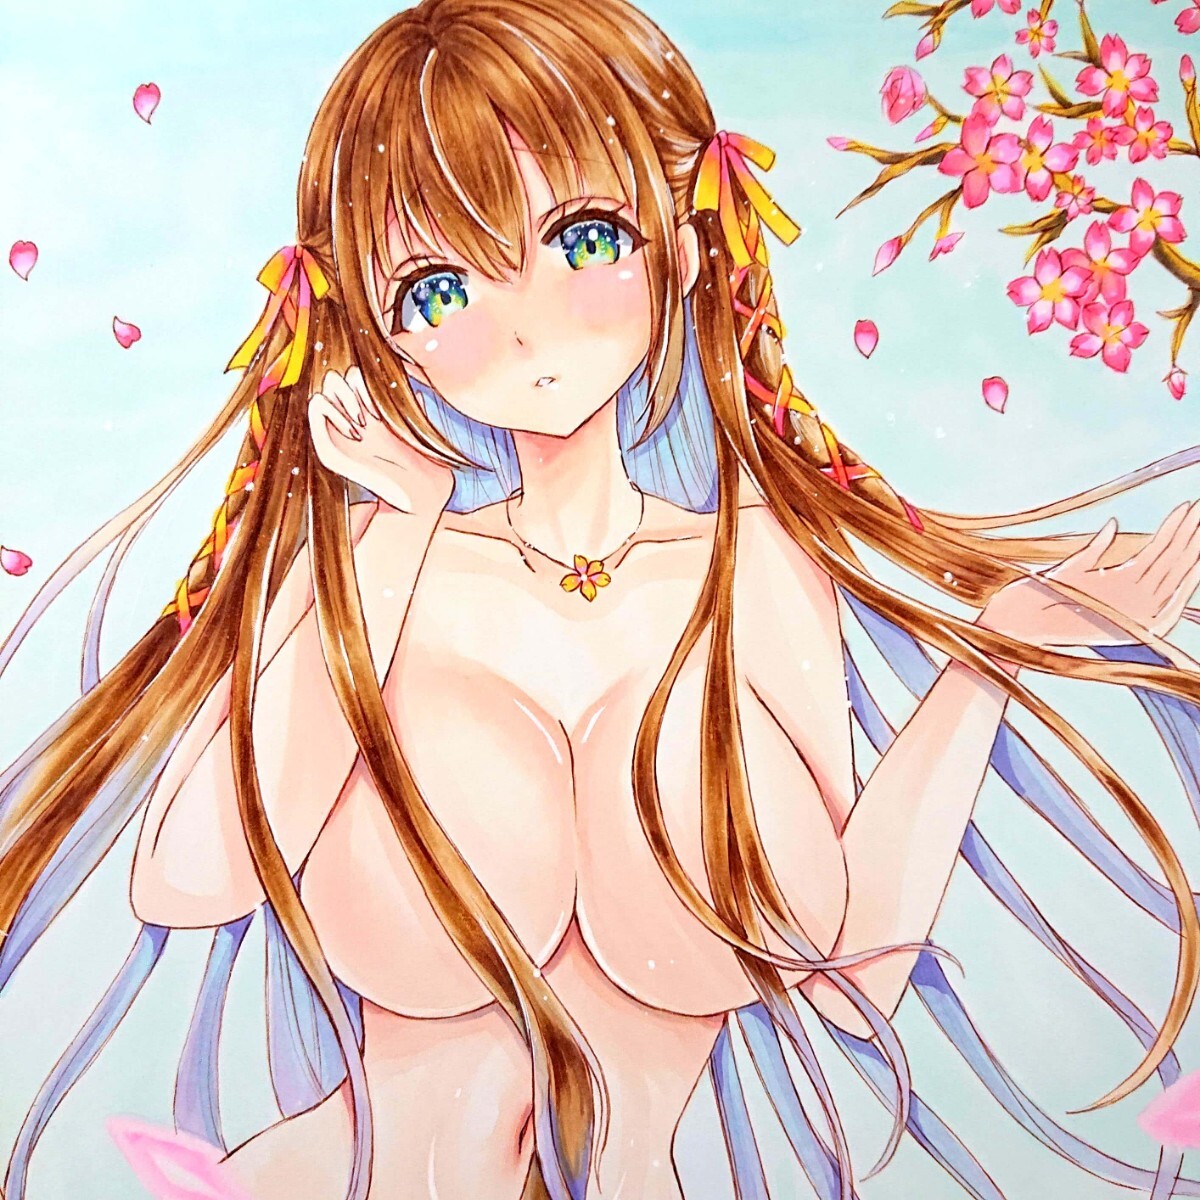 Wiedergelistet [A4] Original handgezeichnete Illustration Kirschblüten, am Wasser, und Mädchen, Comics, Anime-Waren, handgezeichnete Illustration